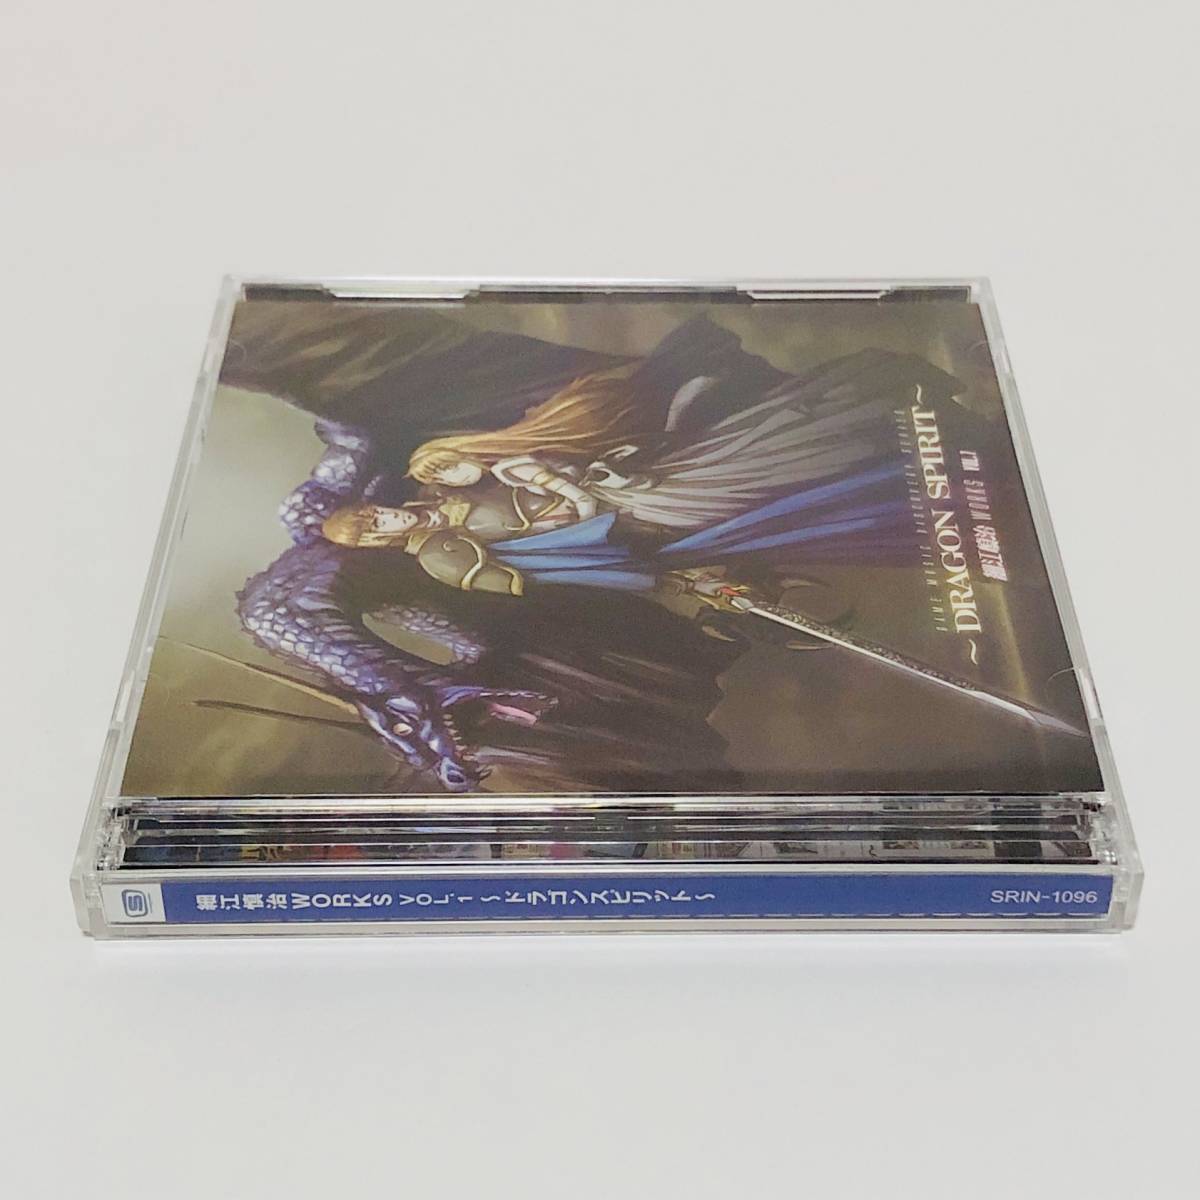 細江慎治 WORKS Vol.1 ドラゴンスピリット 2枚組CD アサルト クエスター Shinji Hosoe Works Vol.1 Dragon Spirit Soundtrack CD Namco_画像3